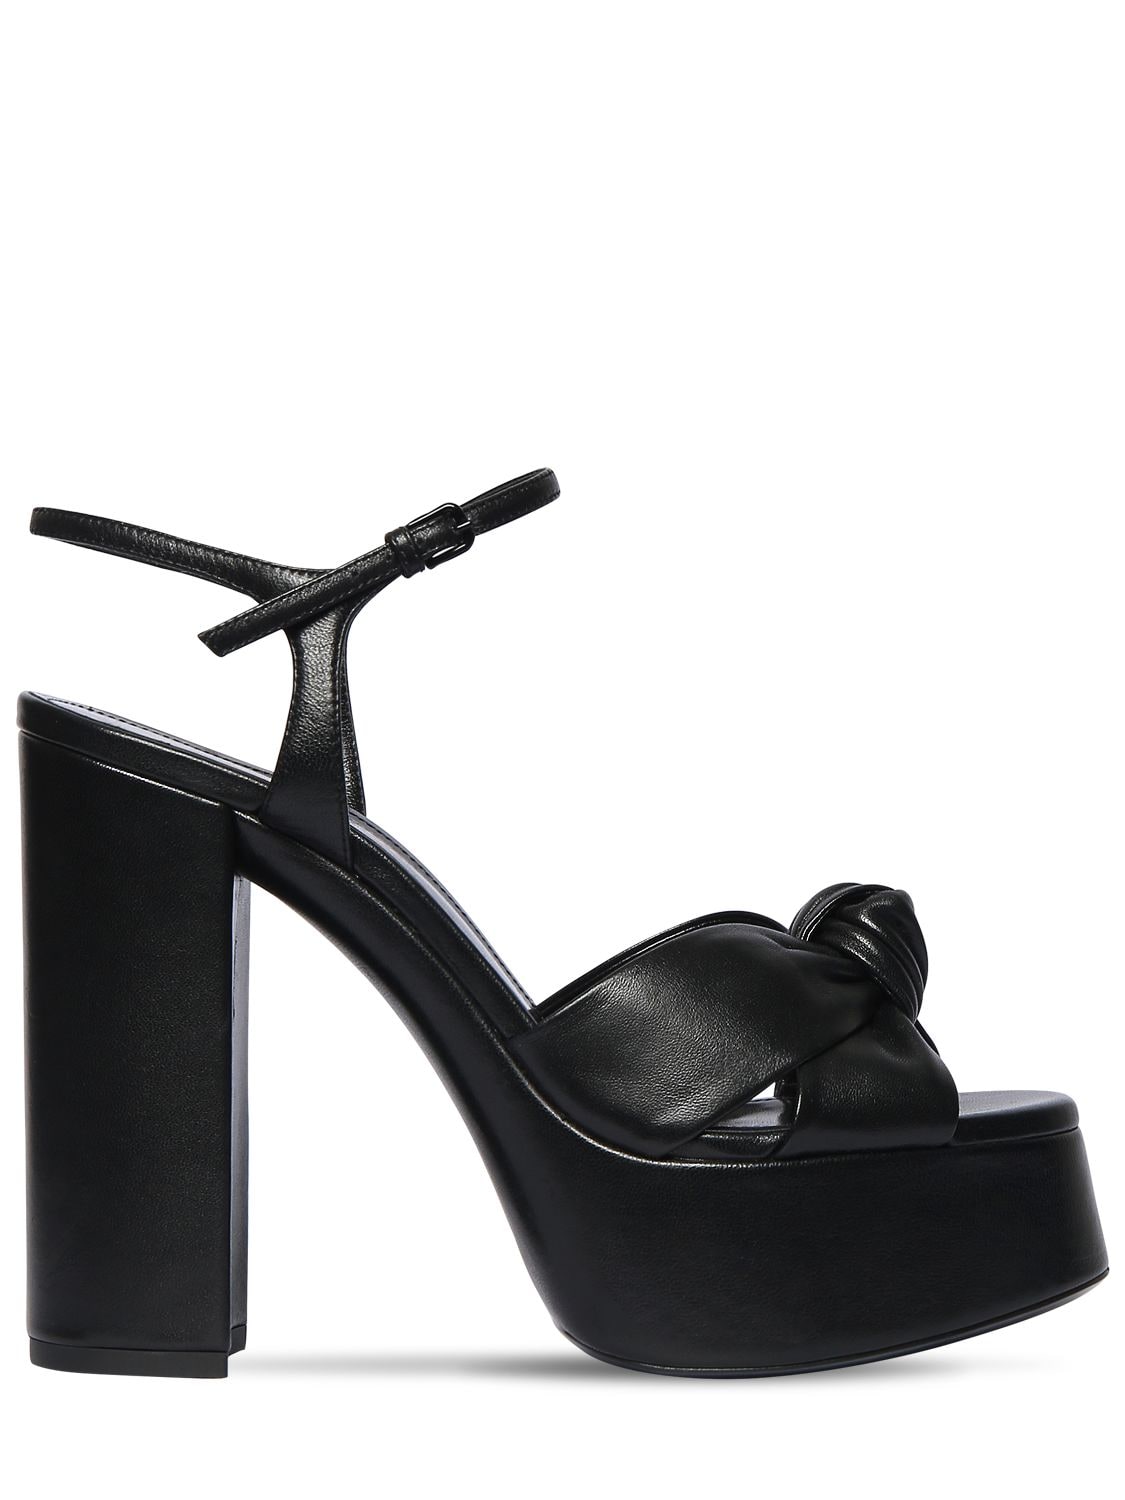 Image of 120mm Bianca Leather Platform Sandals